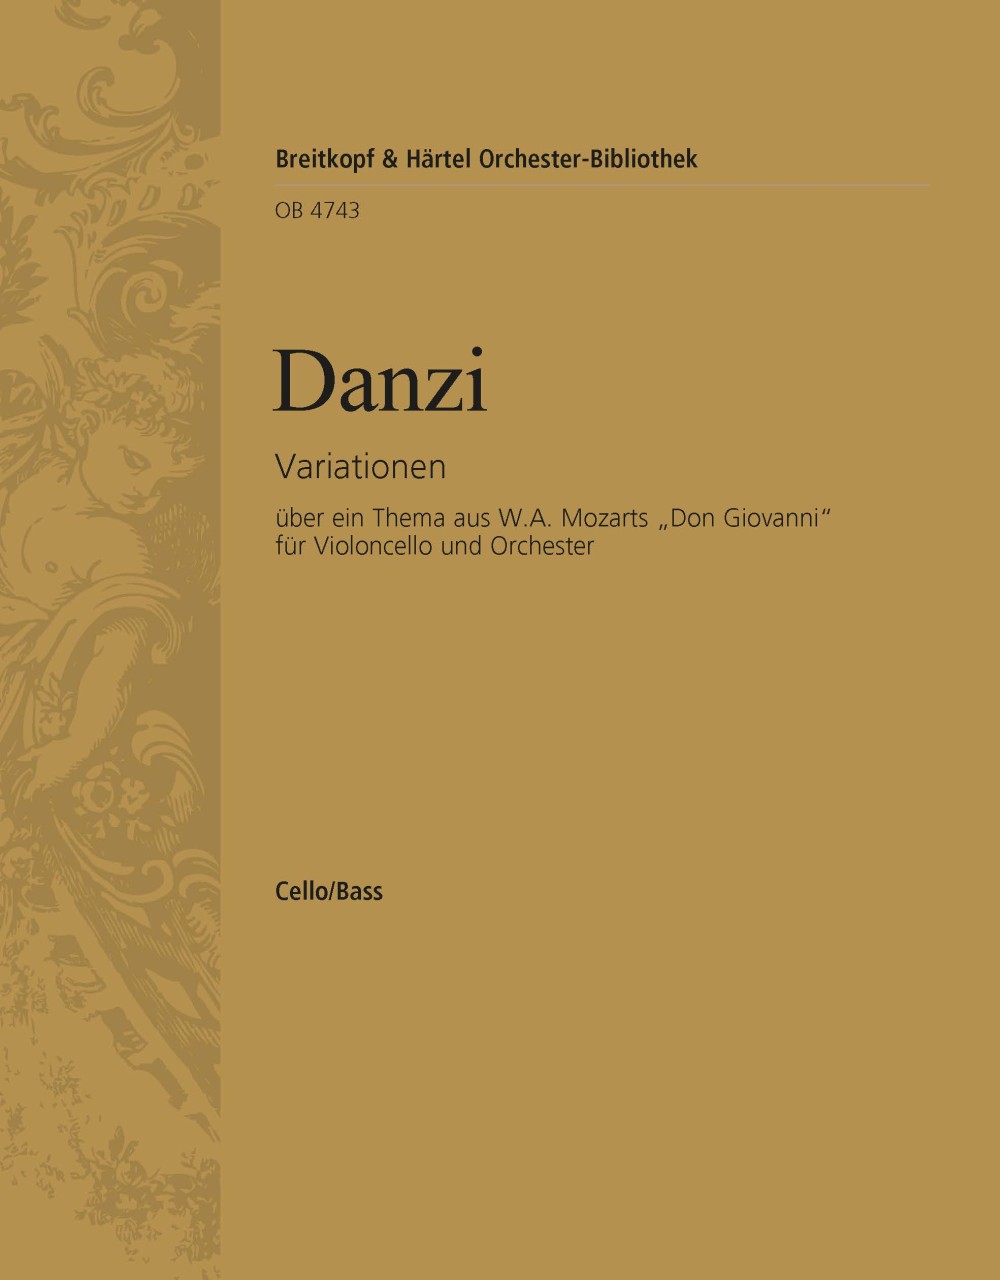 Variationen 'Don Giovanni'